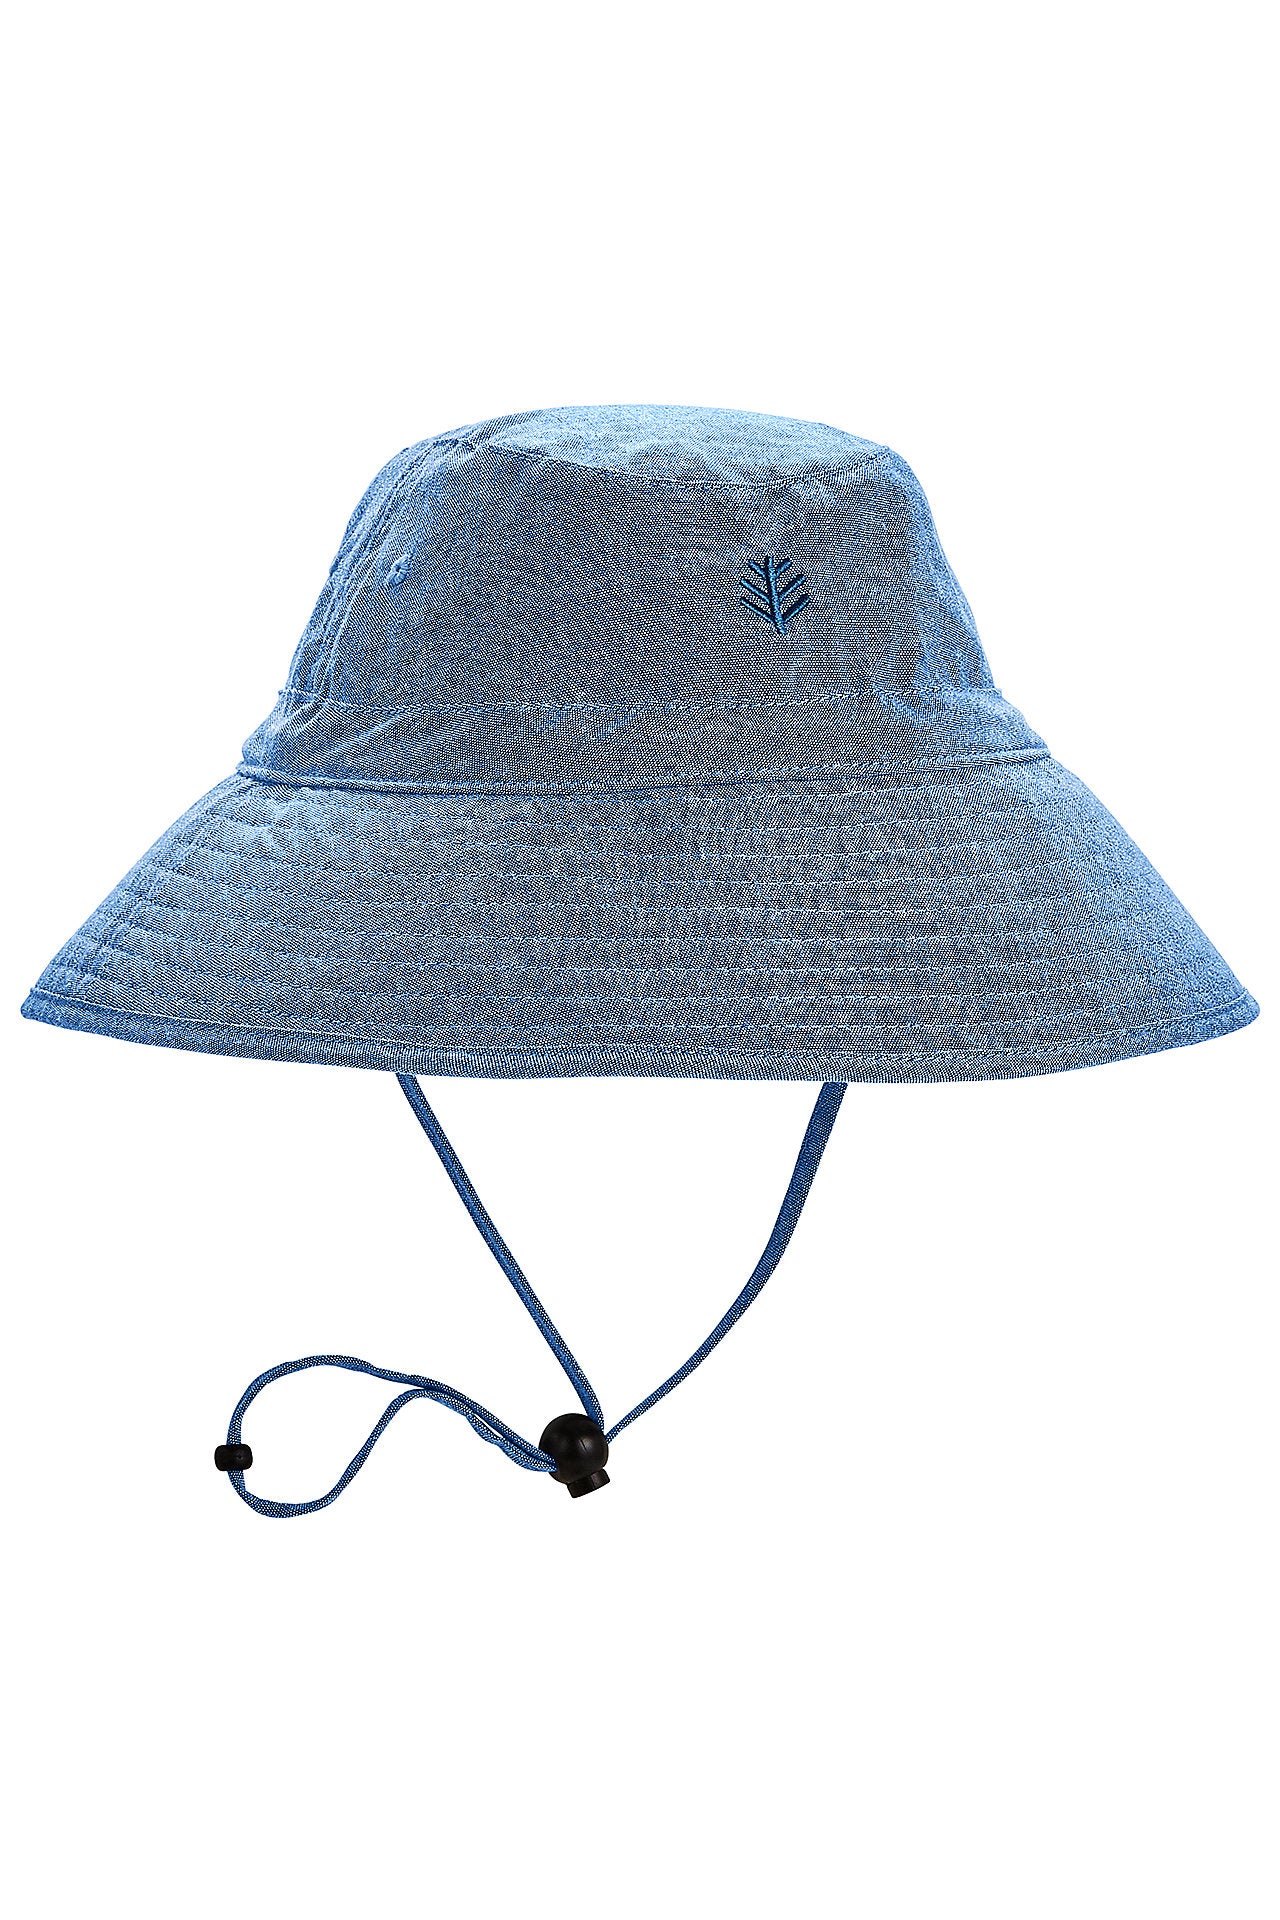 Chapeau Extol avec lampe frontale et chargeur USB 300 mAh bleu/violet avec  pompon taille UNI